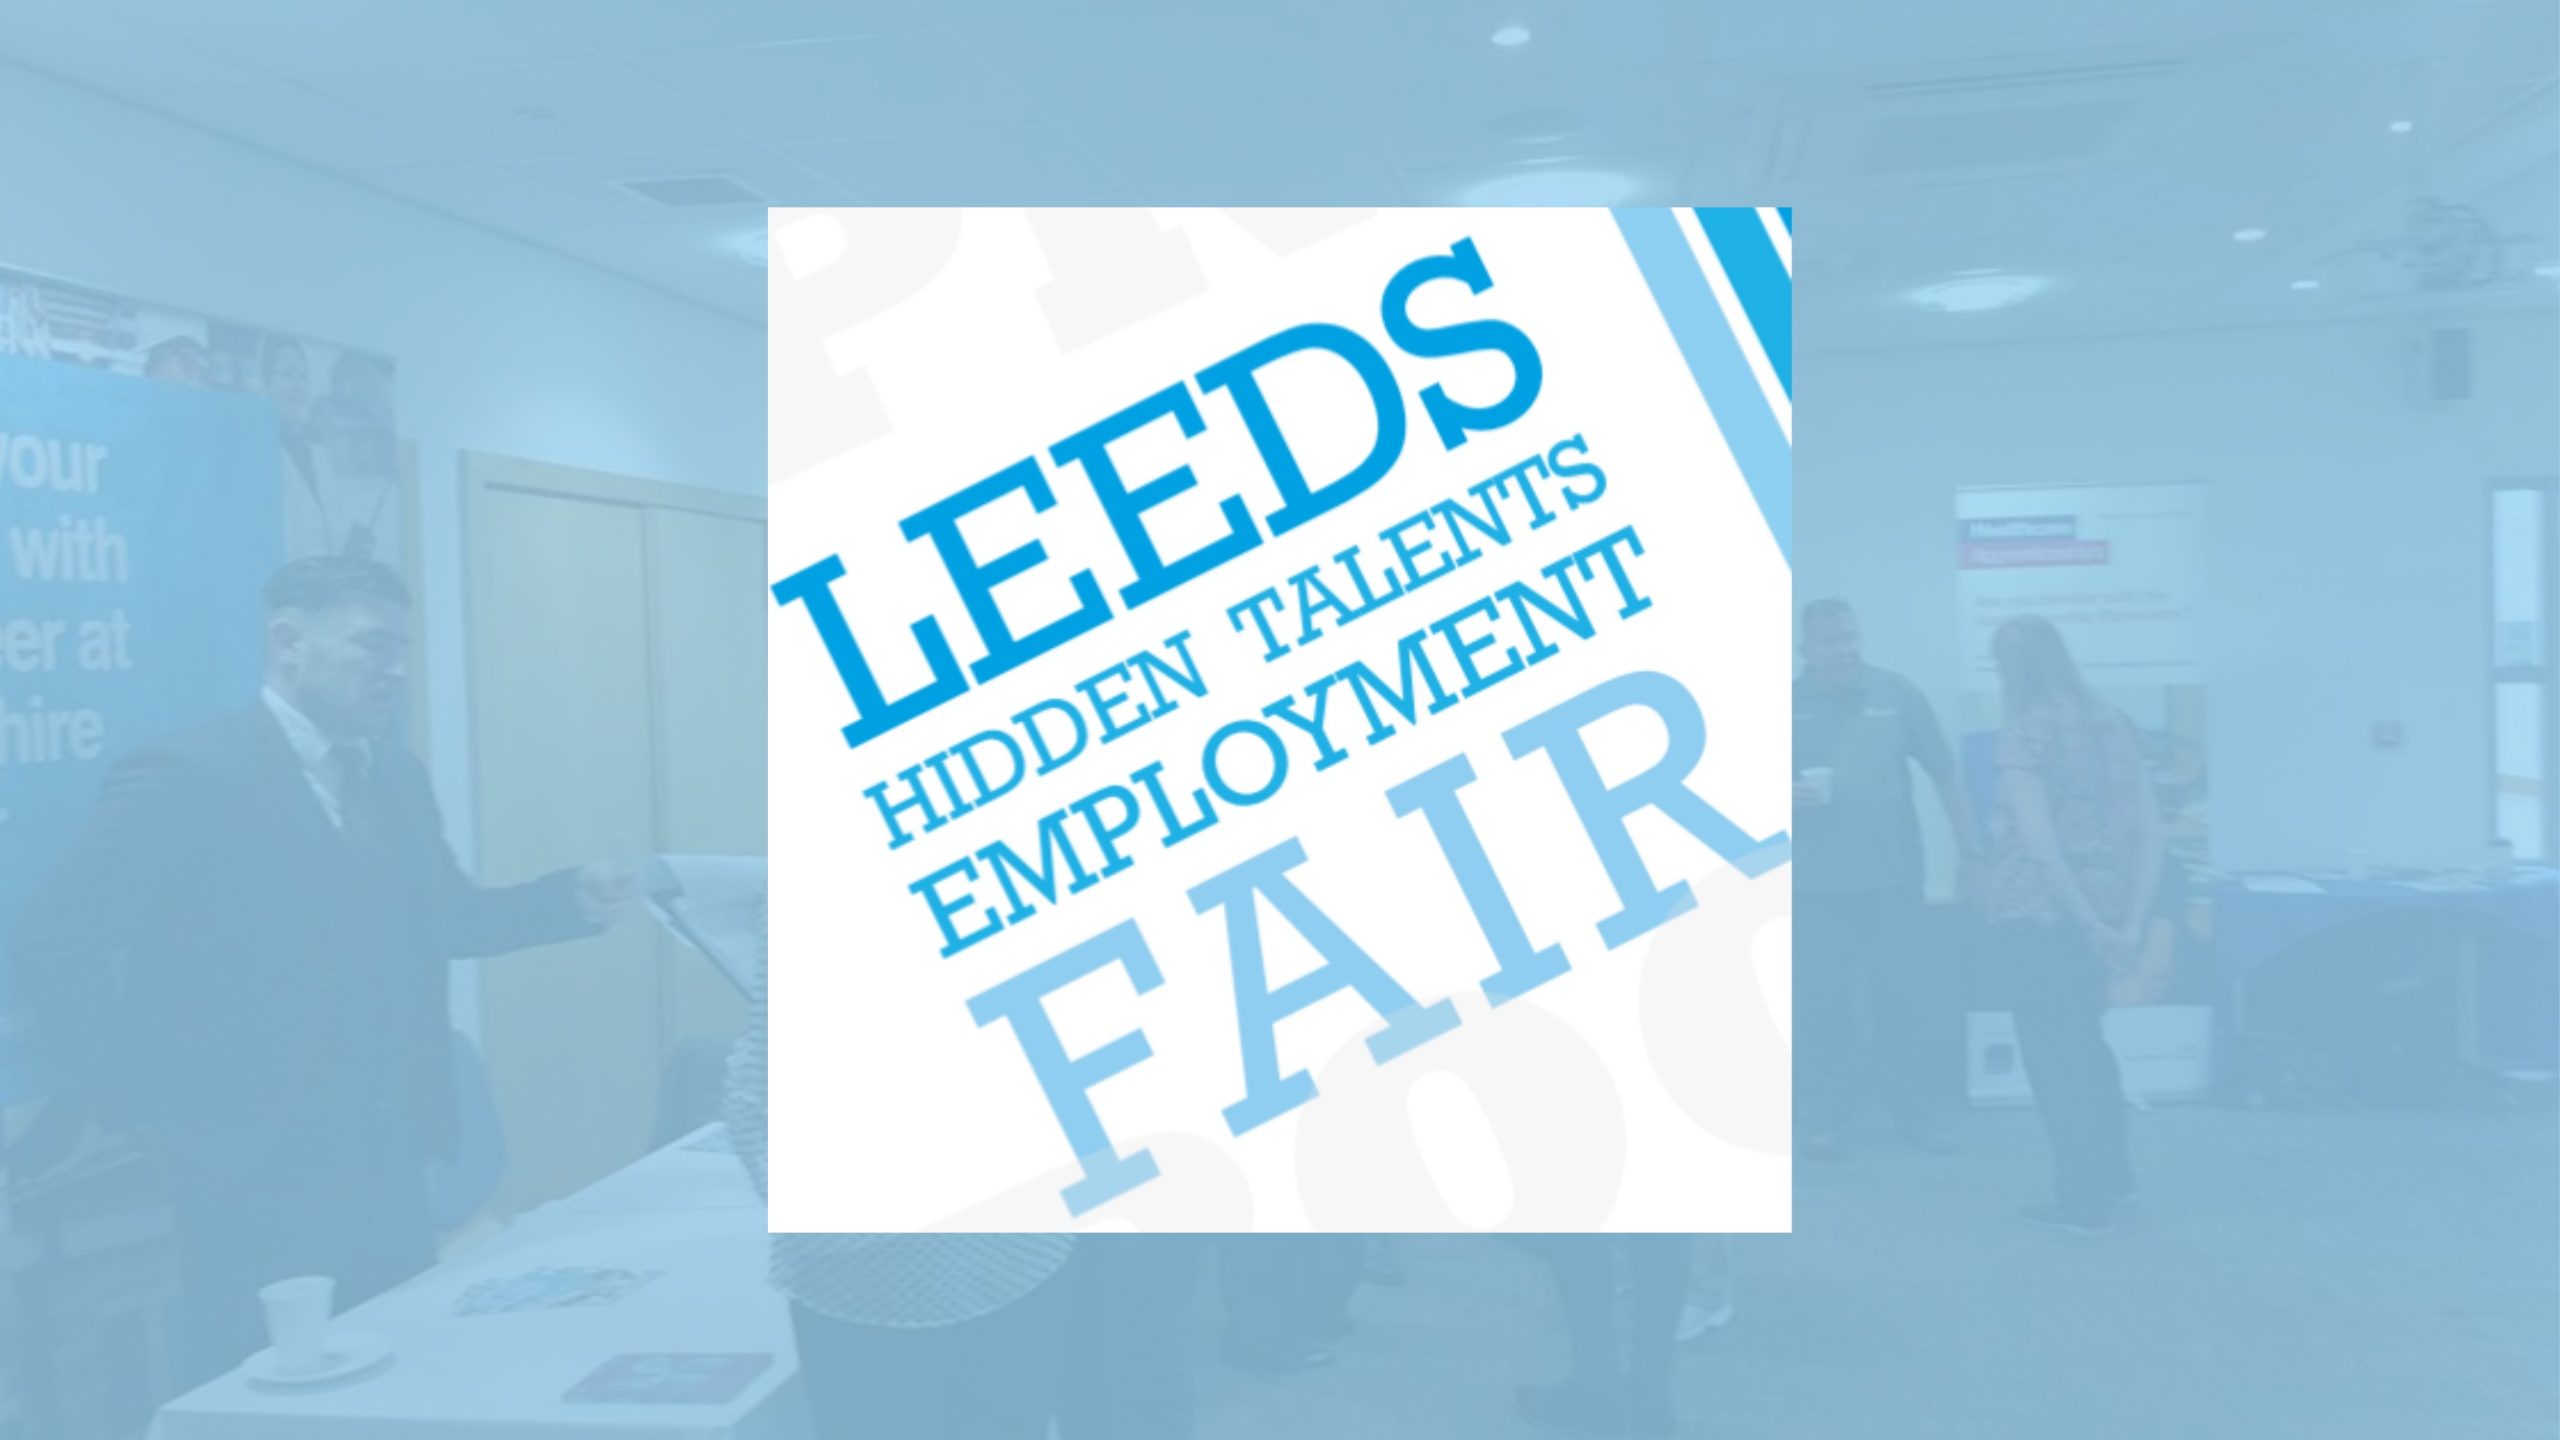 Leeds Hidden Talents Employment Fair - logo on blue background